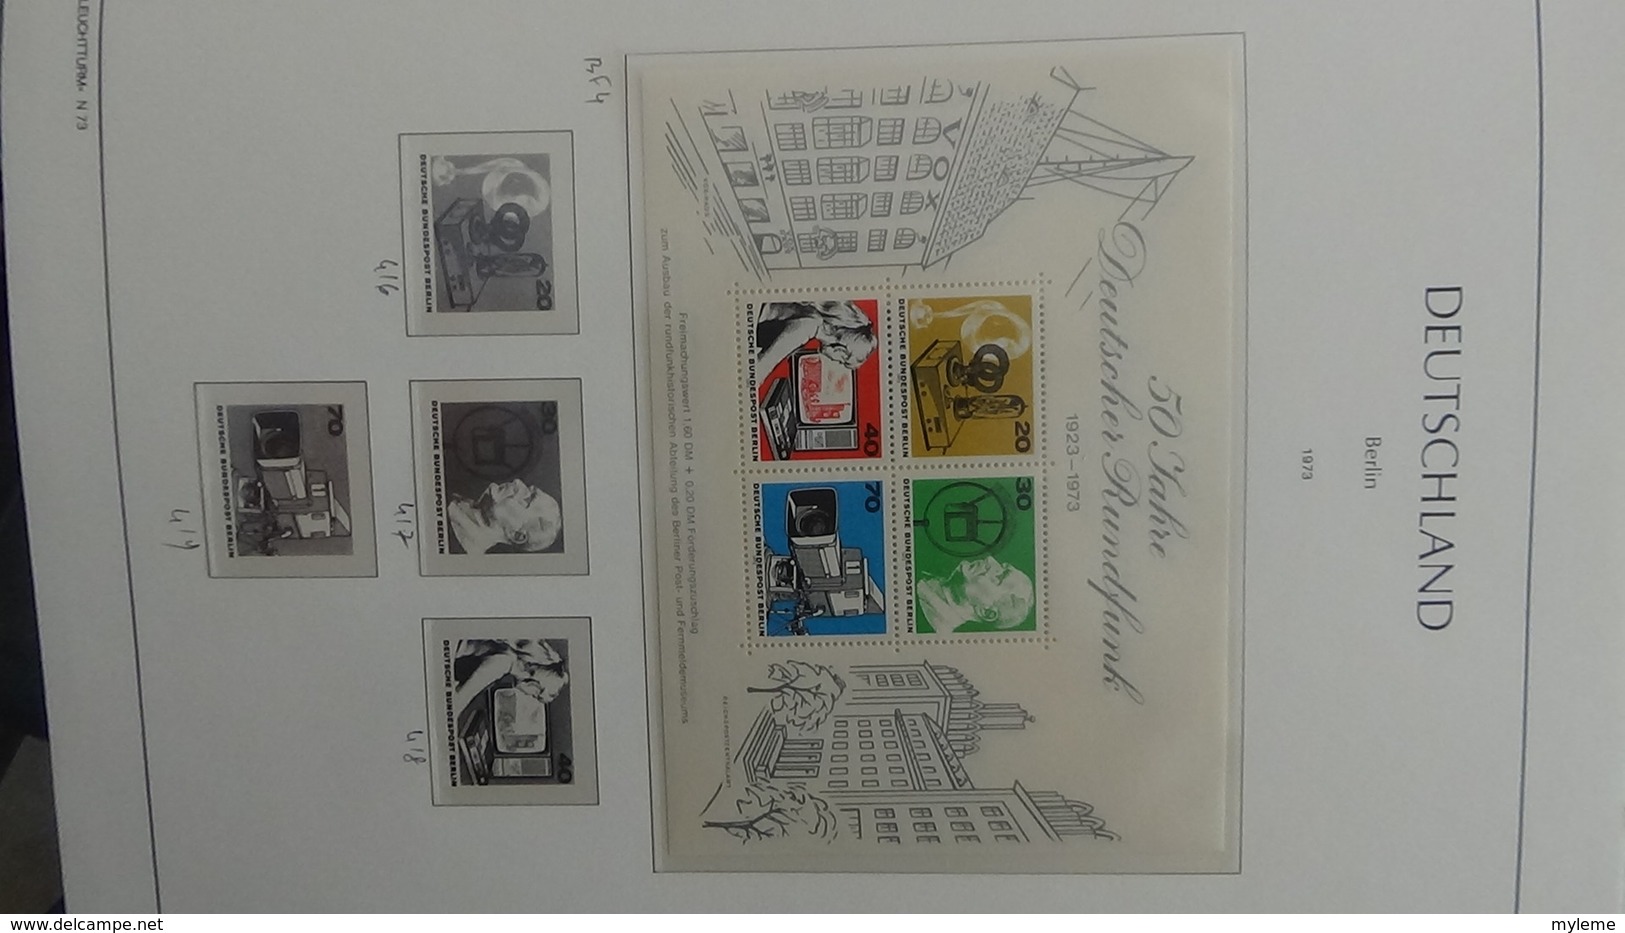 Très belle collection de timbres et blocs ** d'ALLEMAGNE (Berlin) de 1956 à 1990 Port 13.15 OFFERT !!!